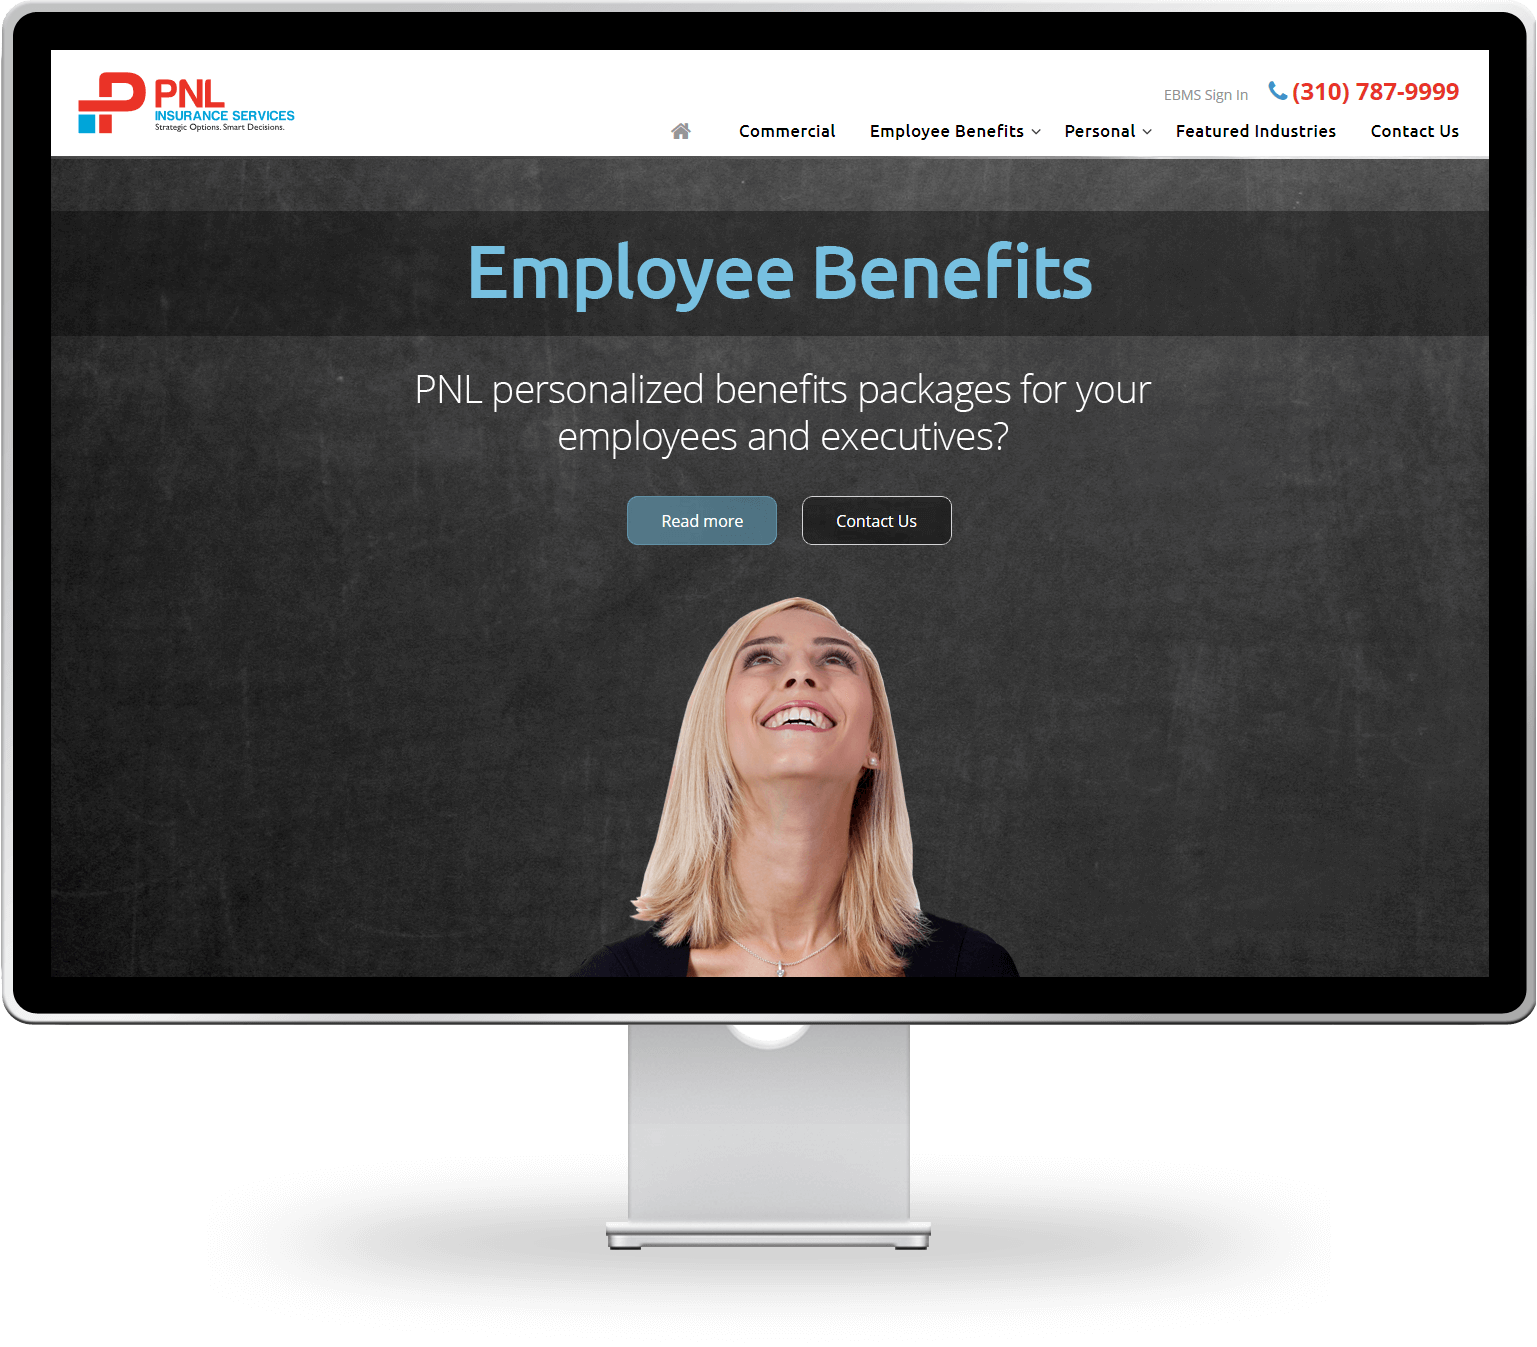 pnl desktop employee benefits